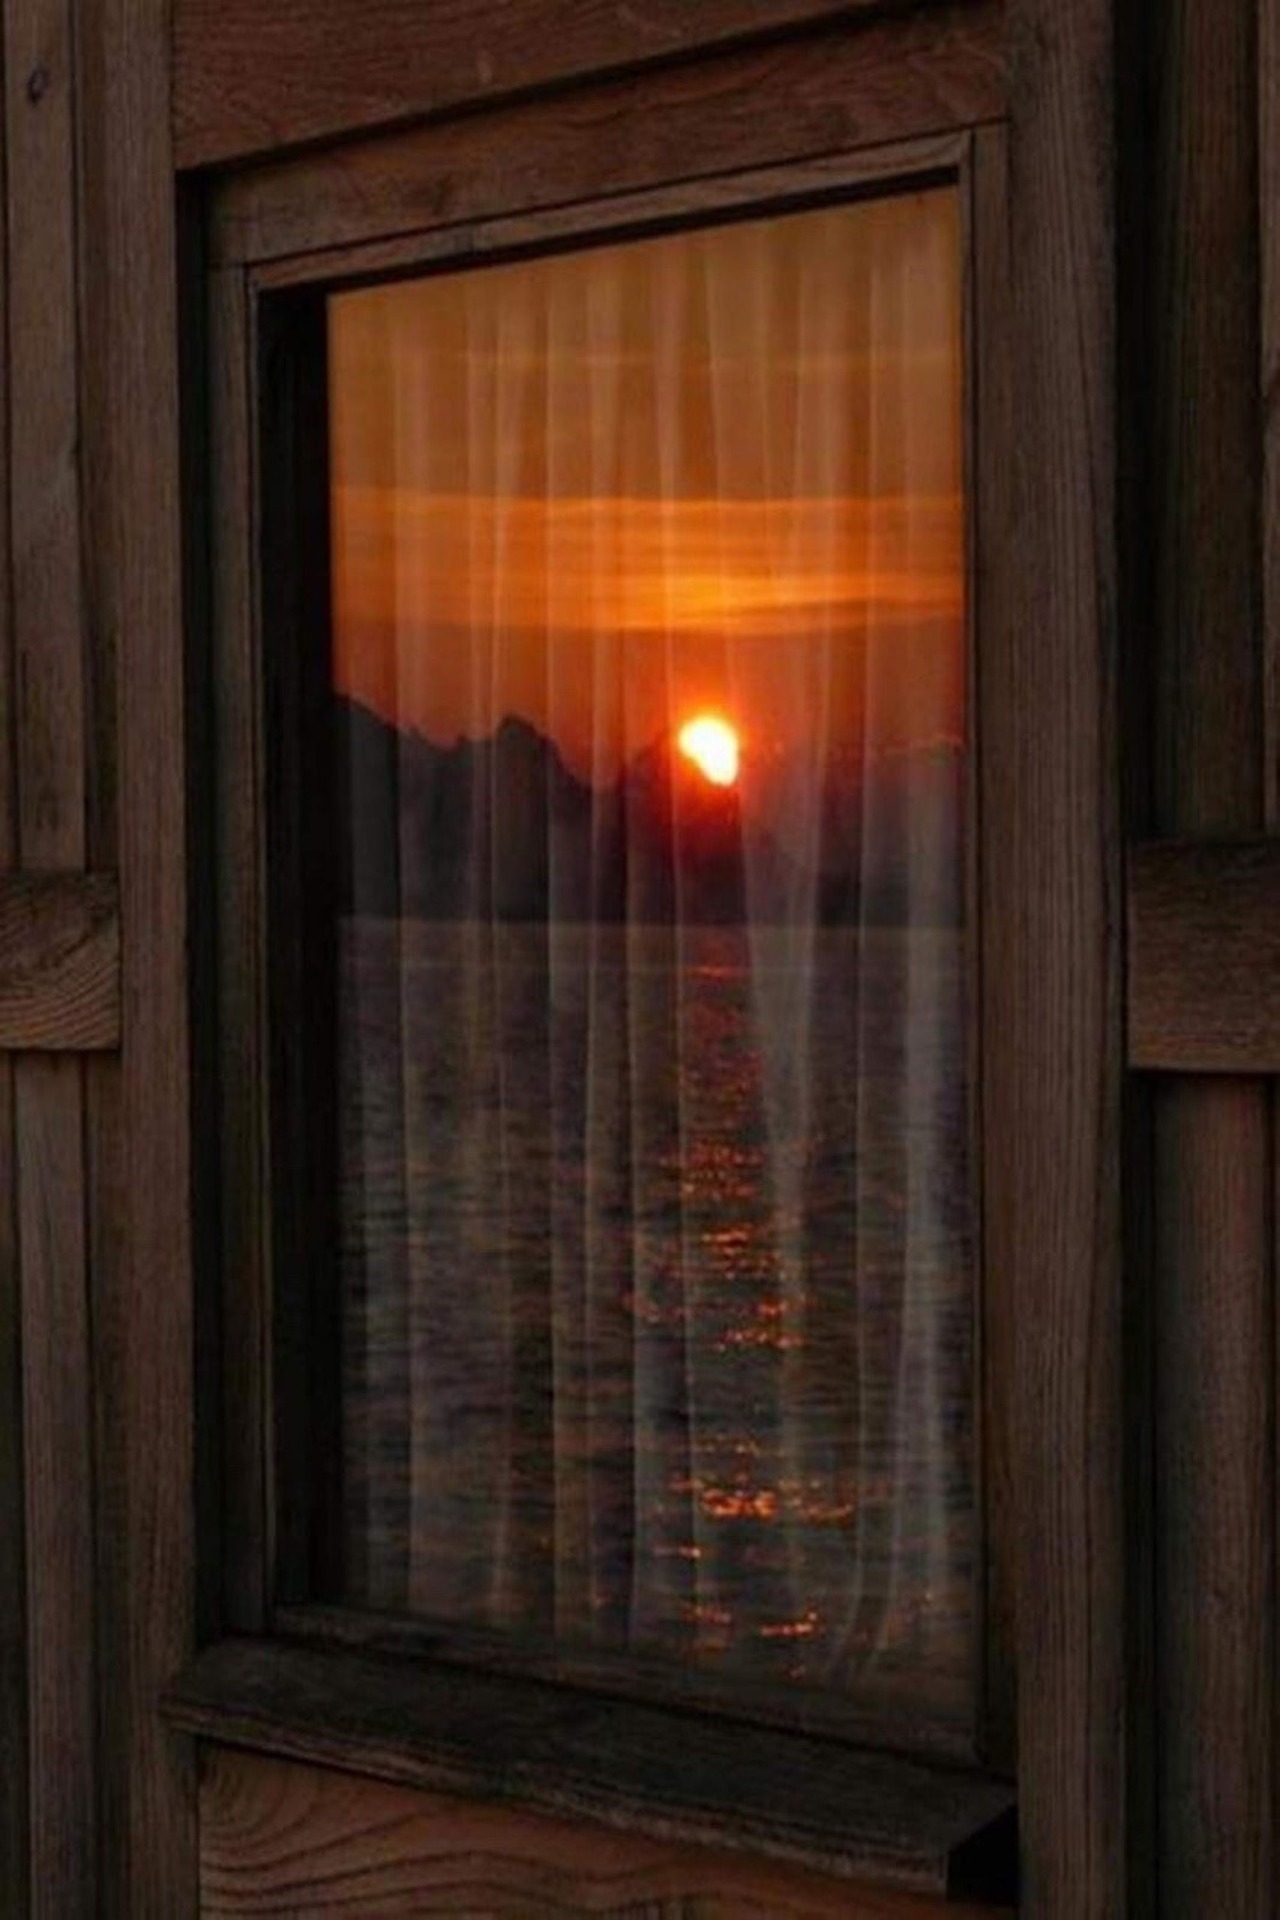 Вечер свет в окне. Свет в окне. Вечернее окно. Отражение солнца в окне. Солнце в окне.